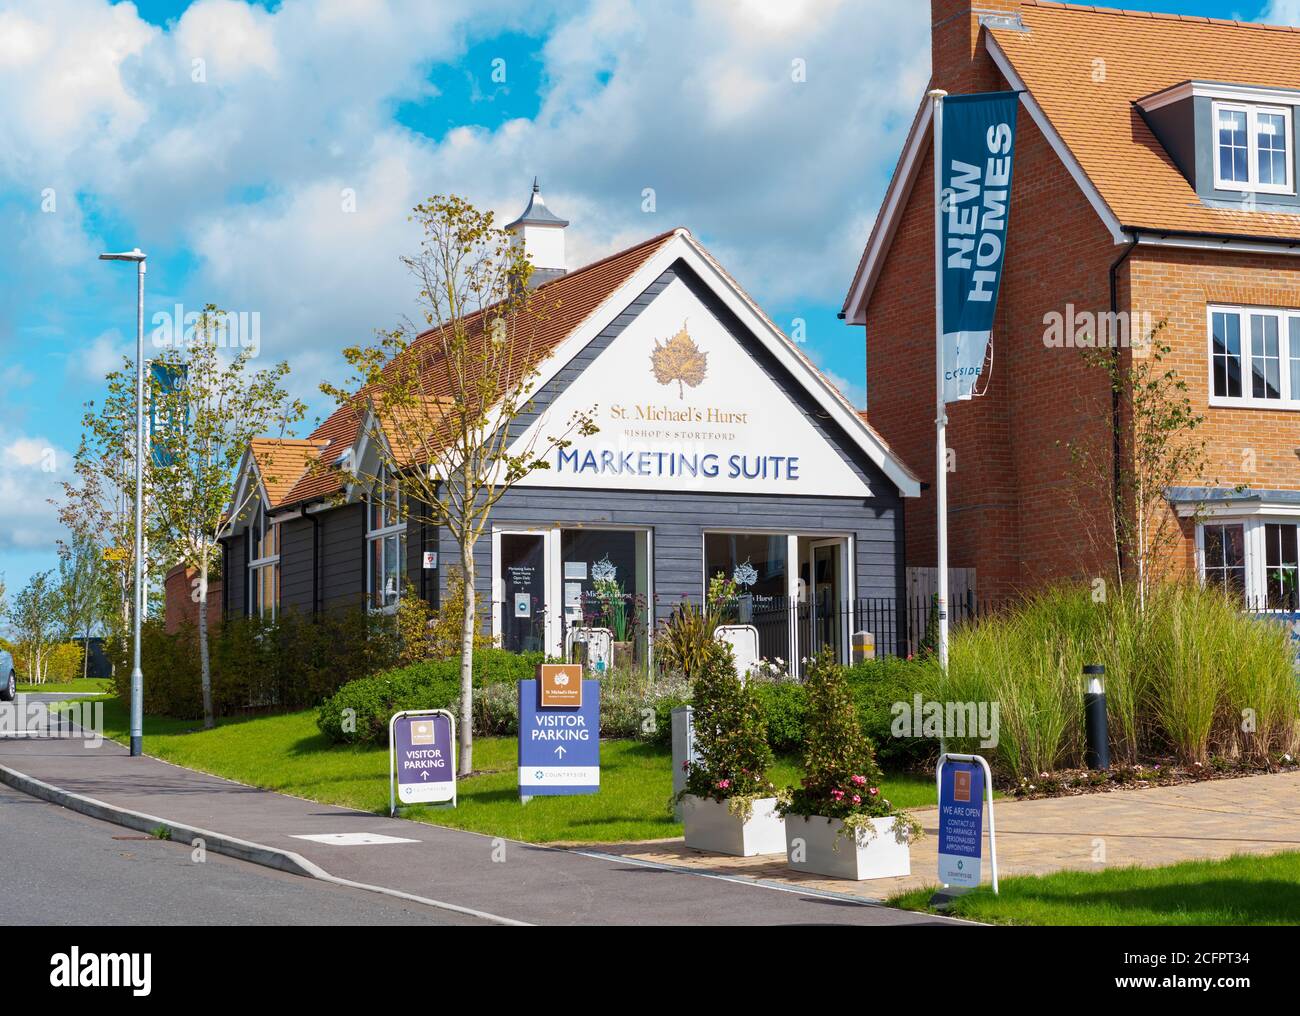 Sales and Marketing Suite au nouveau développement immobilier de St Michael's Hurst à Bishop's Stortford, Hertfordshire.ROYAUME-UNI Banque D'Images